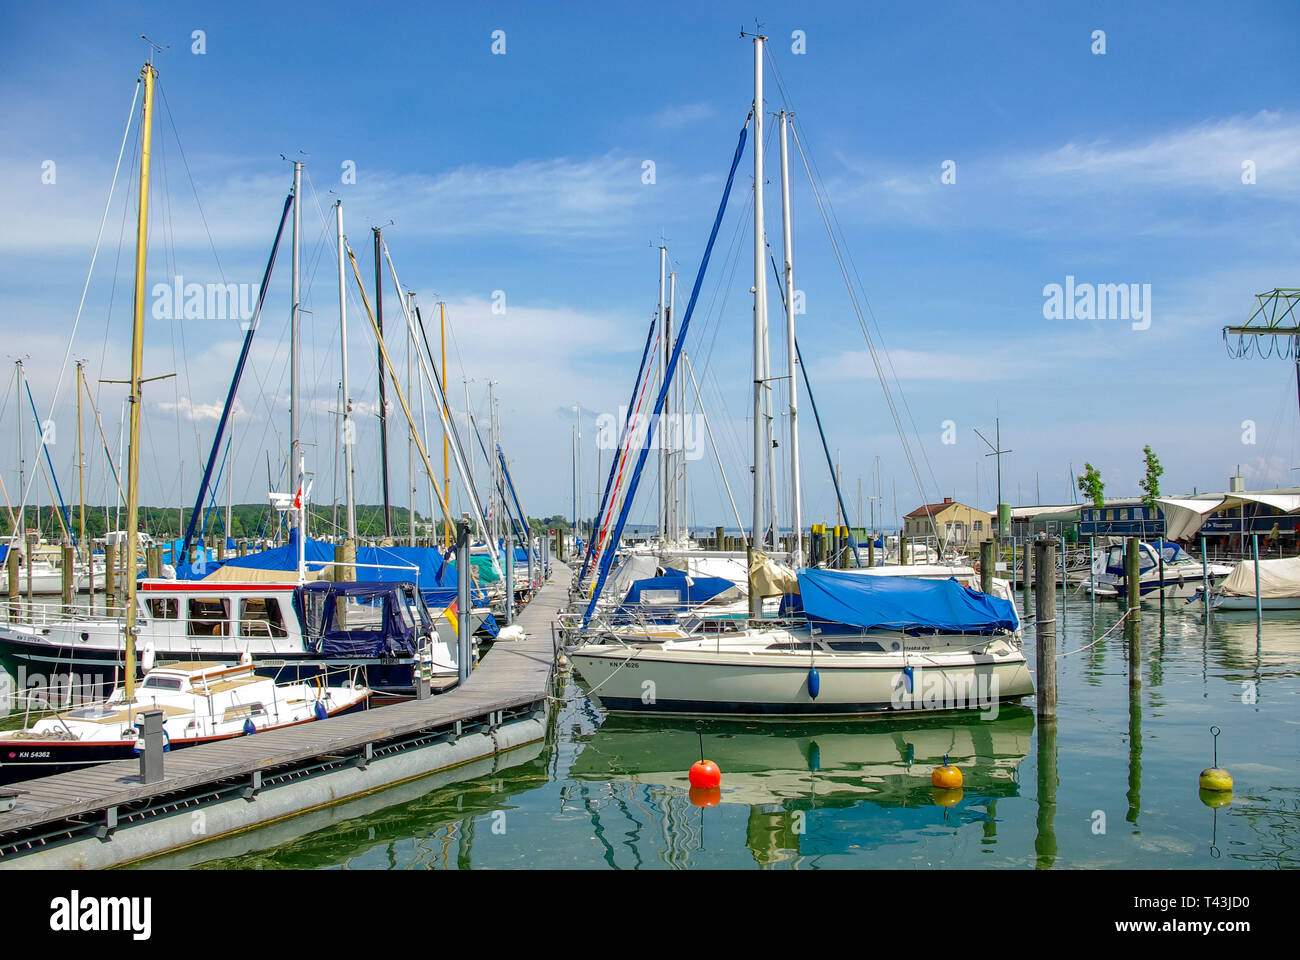 En el Lago de Constanza Konstanz, Alemania: vistas de los barcos de vela y el puerto deportivo. Foto de stock